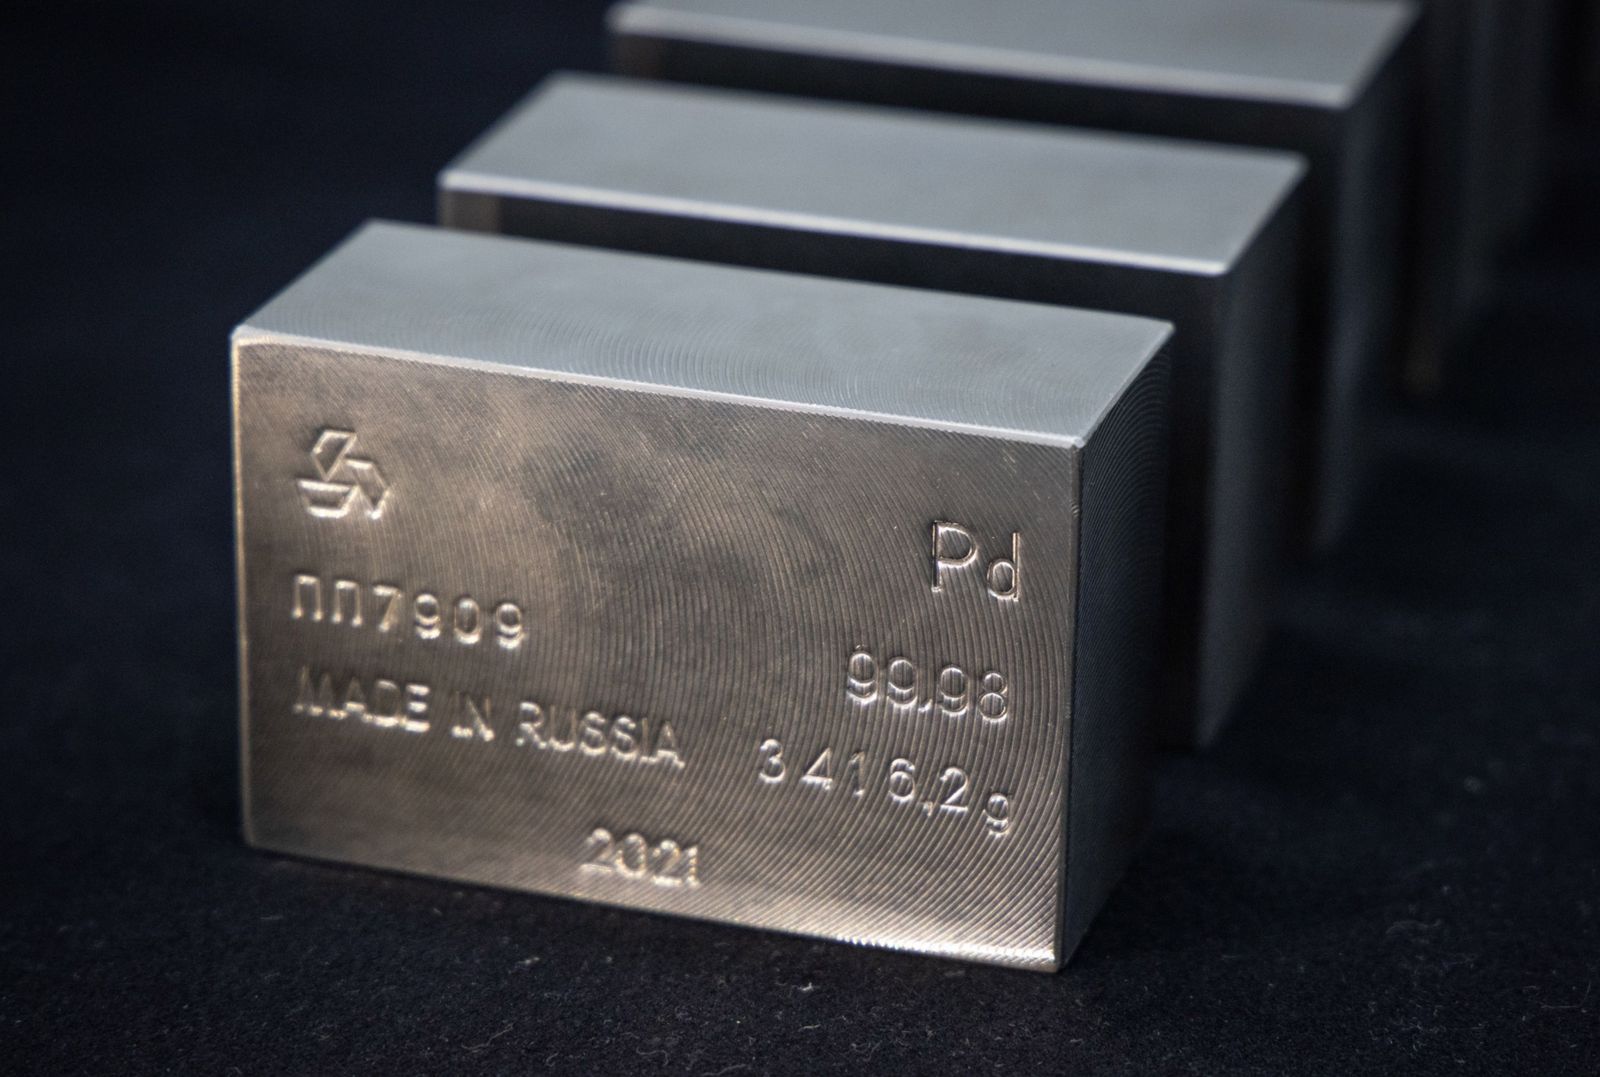 سبائك من البلاديوم في مصنع للمعادن بروسيا - 9 ديسمبر 2021 - Bloomberg